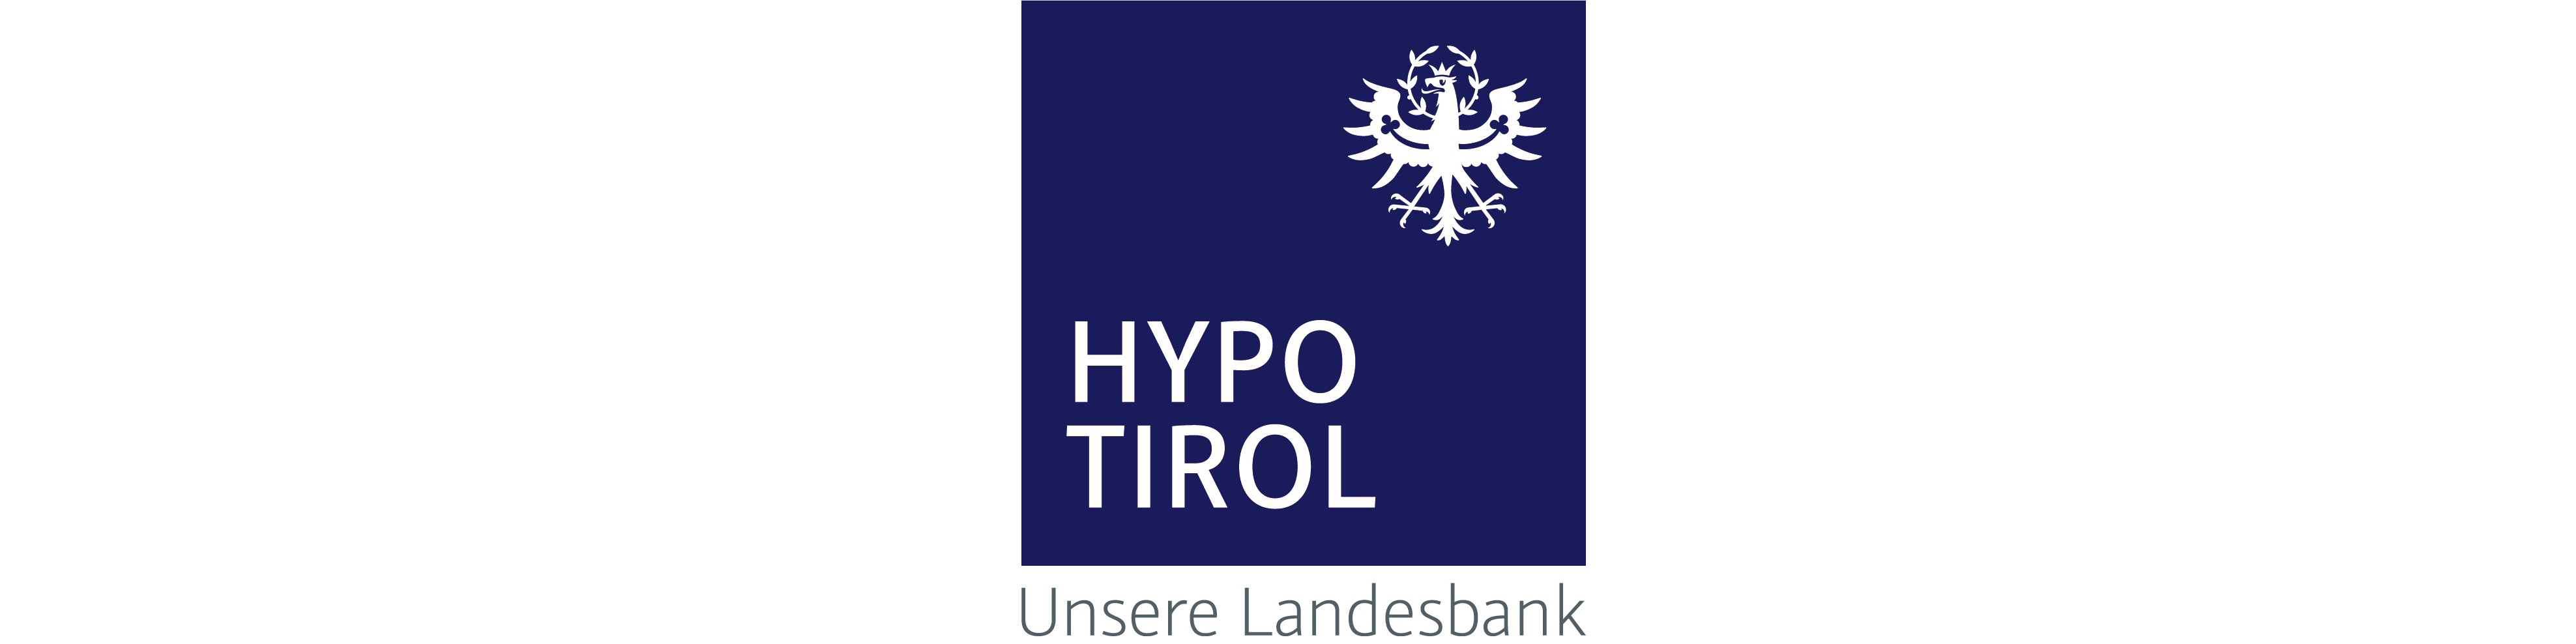 hypo-tirol